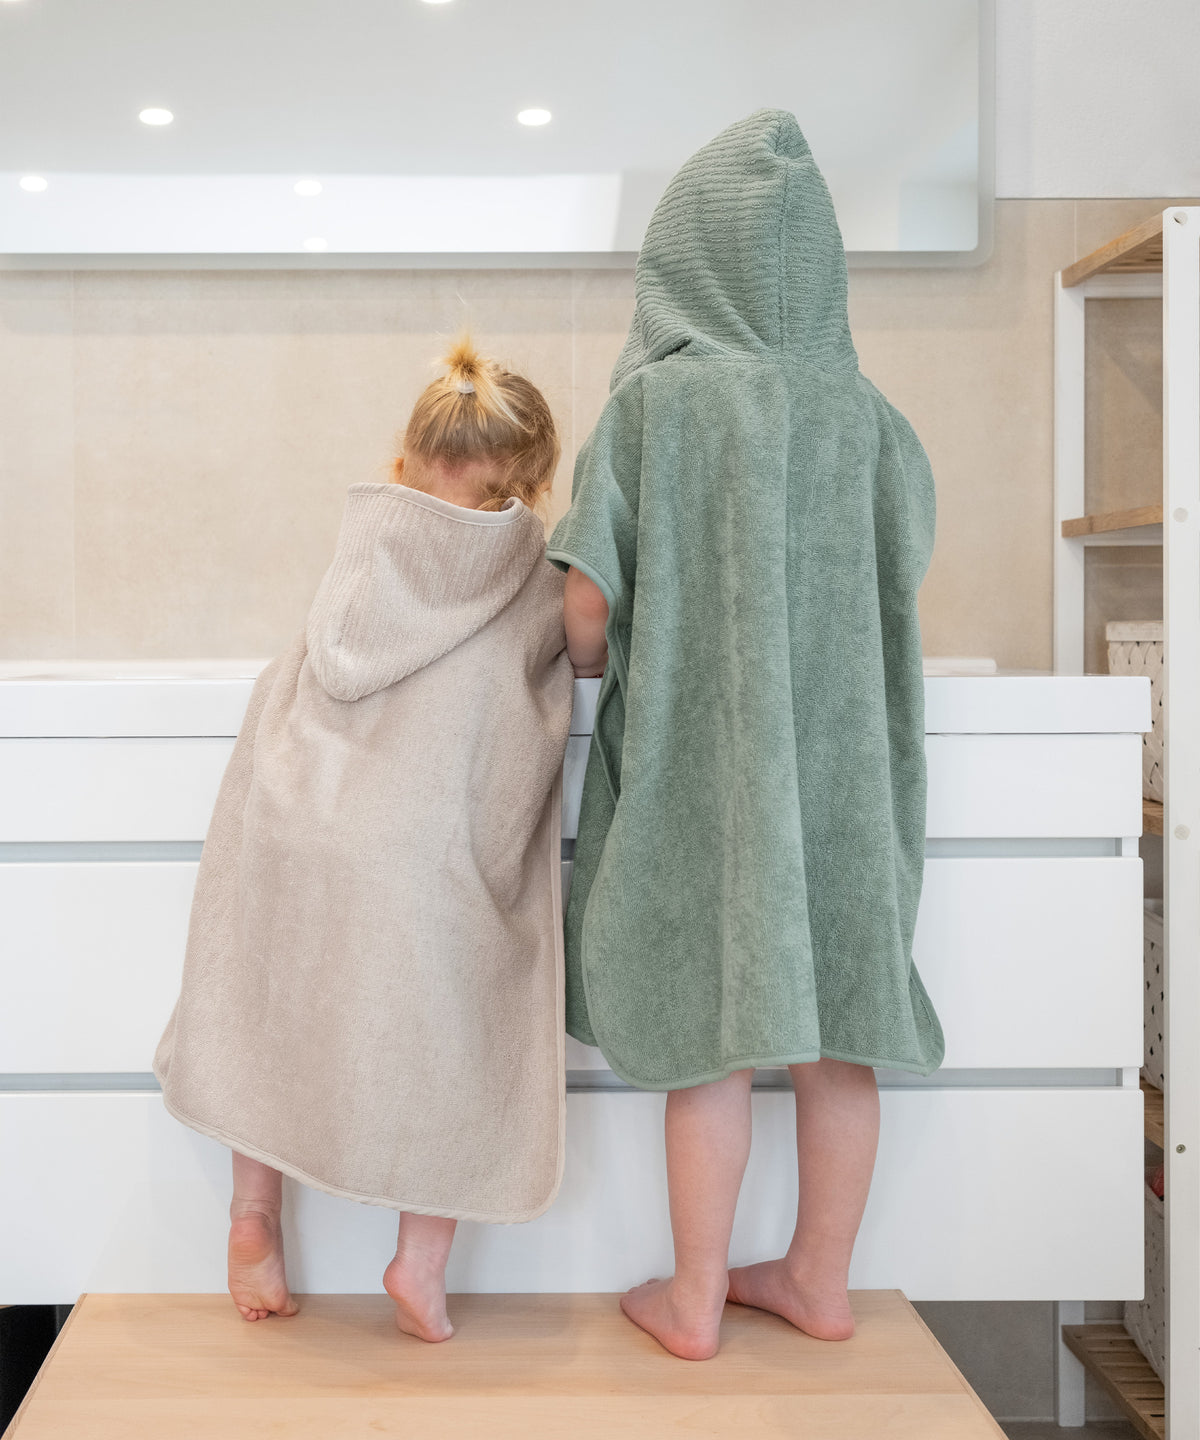 Zwei Kinder stehen auf Hocker an Waschbecken im Bad.